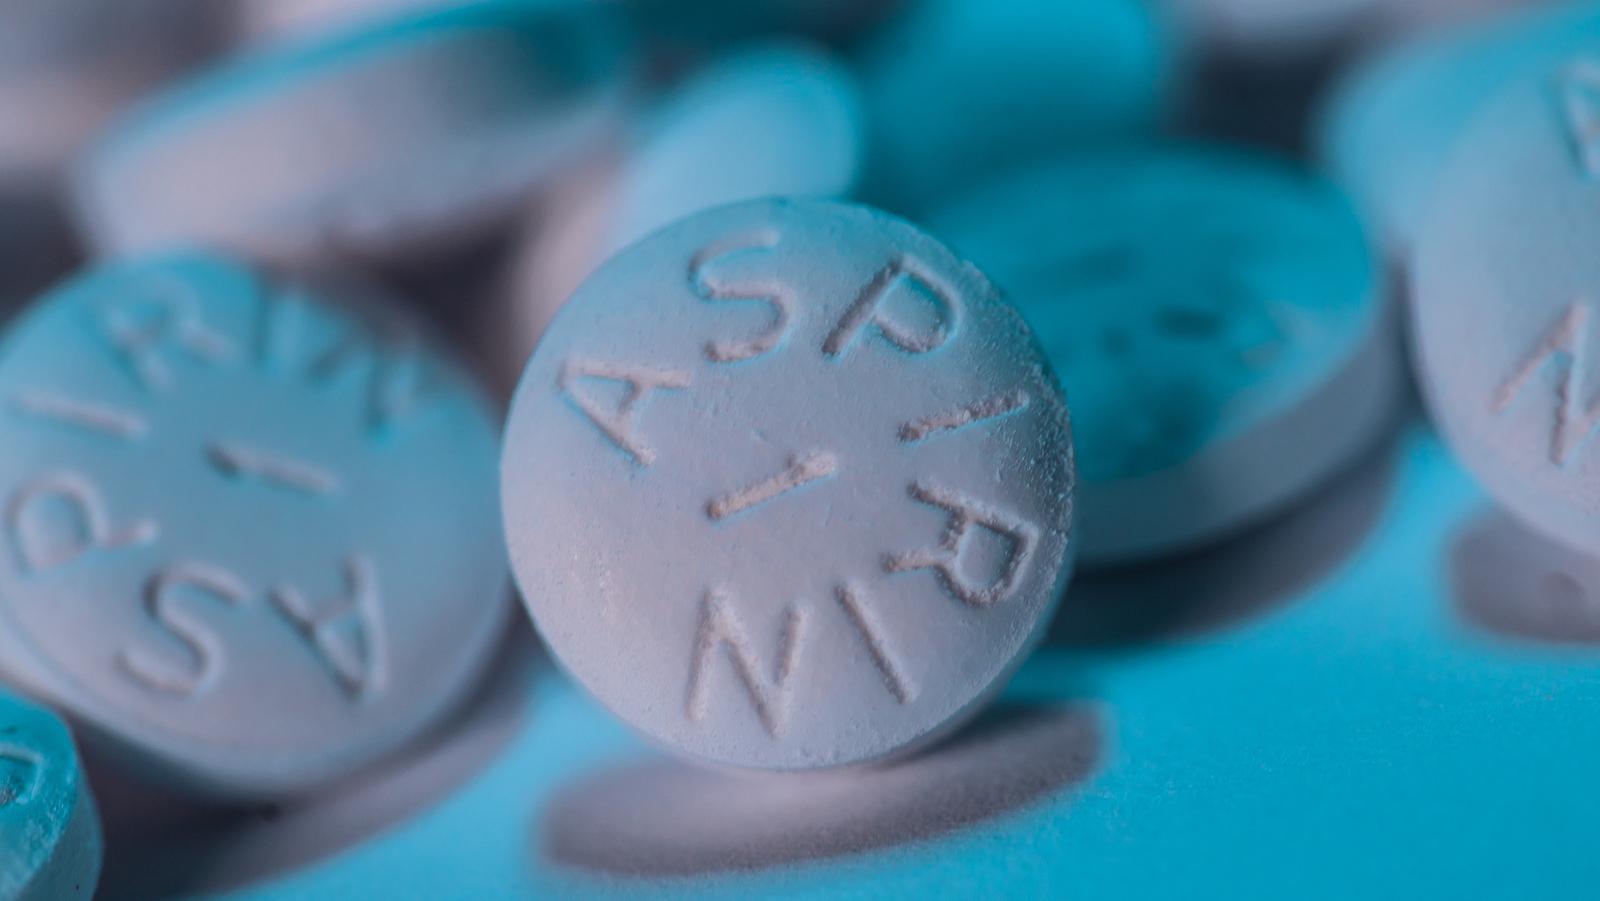 Aspirín po celom svete používa mnoho miliónov ľudí, vďaka jeho účinkom na zmiernenie bolesti, horúčky a zápalu.